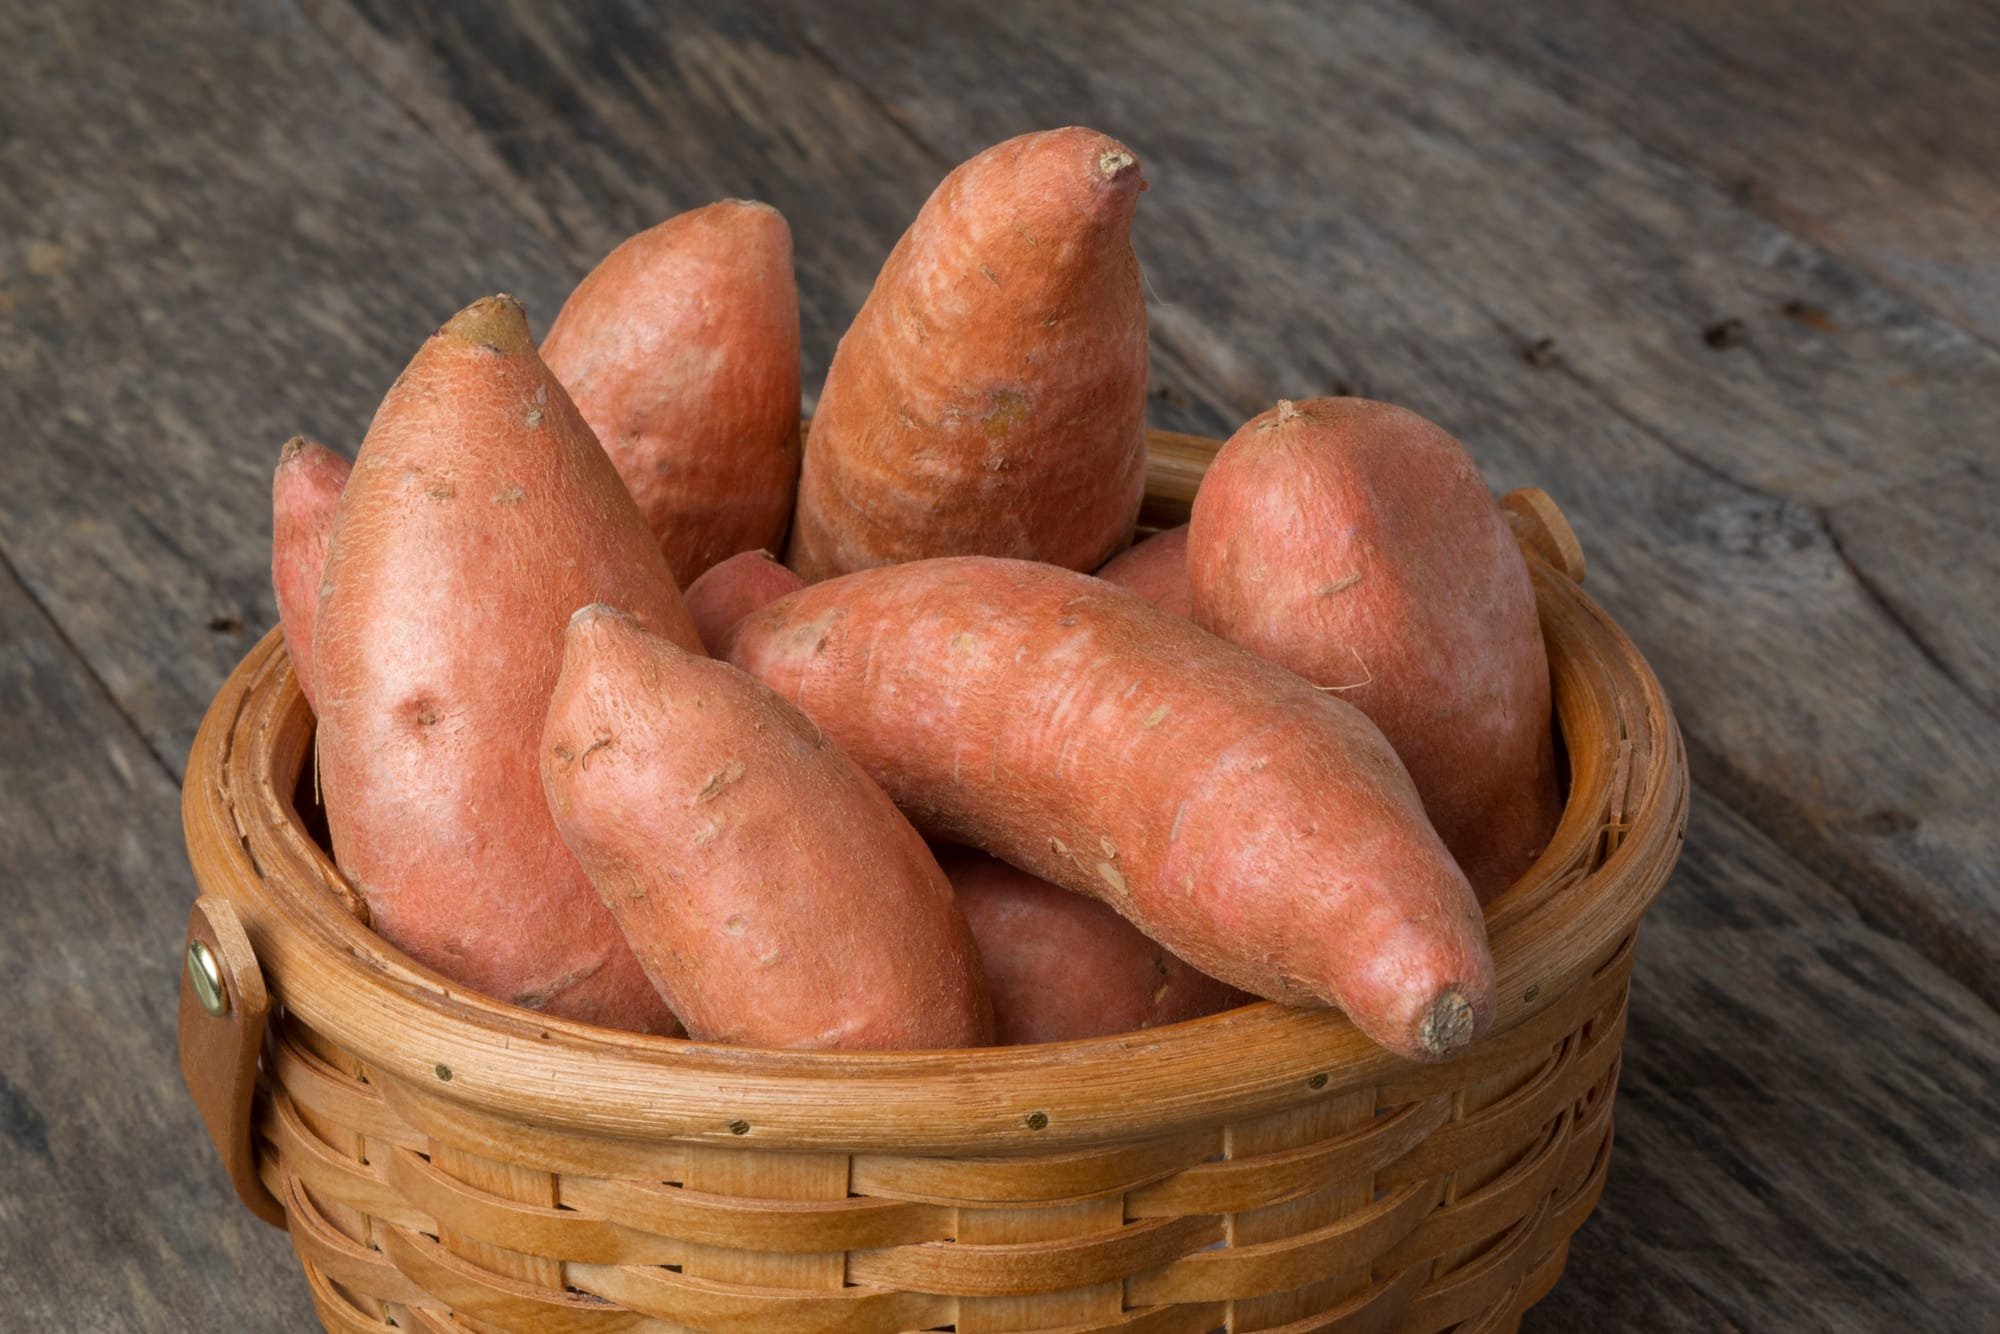 كيف تساعد البطاطا الحلوة على مواجهة ضغط الدم المرتفع؟